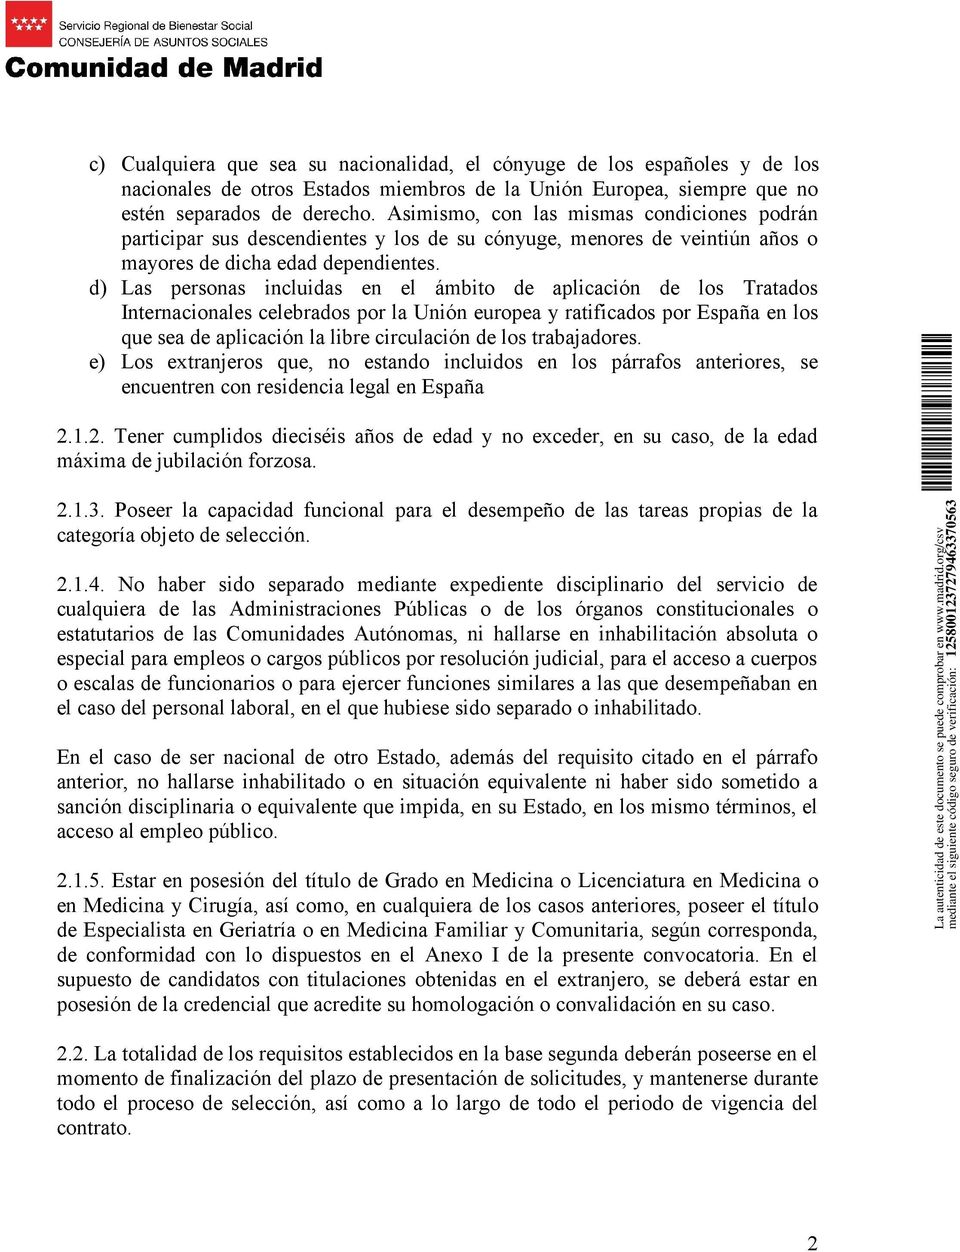 d) Las personas incluidas en el ámbito de aplicación de los Tratados Internacionales celebrados por la Unión europea y ratificados por España en los que sea de aplicación la libre circulación de los